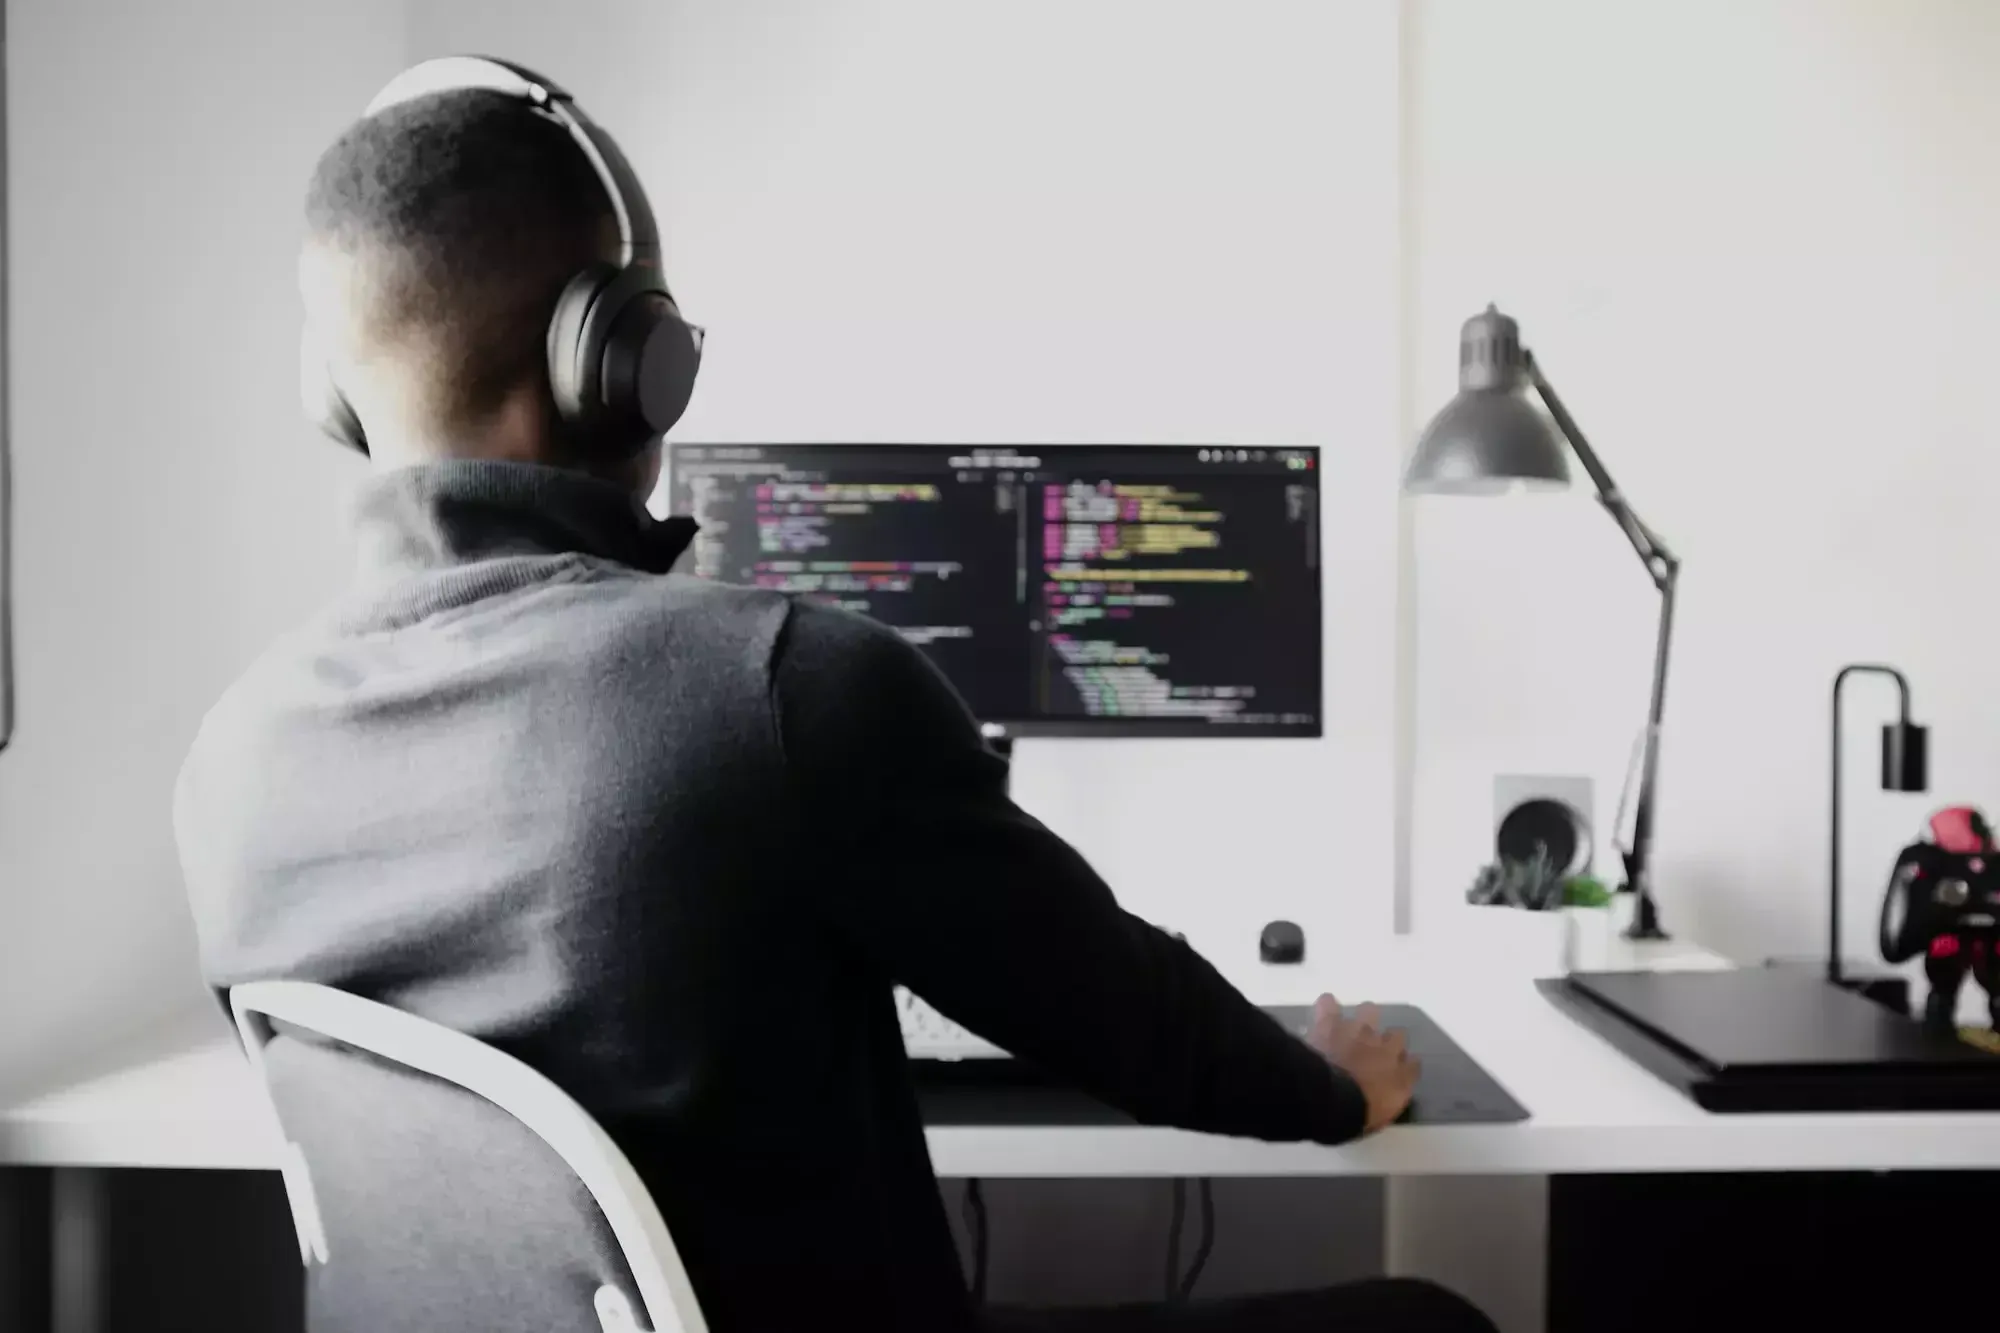 Mann in grauem Pullover und grauen Kopfhörern sitzt am Arbeitsplatz vor einem Bildschirm, auf dem ein langer Code zu sehen ist.